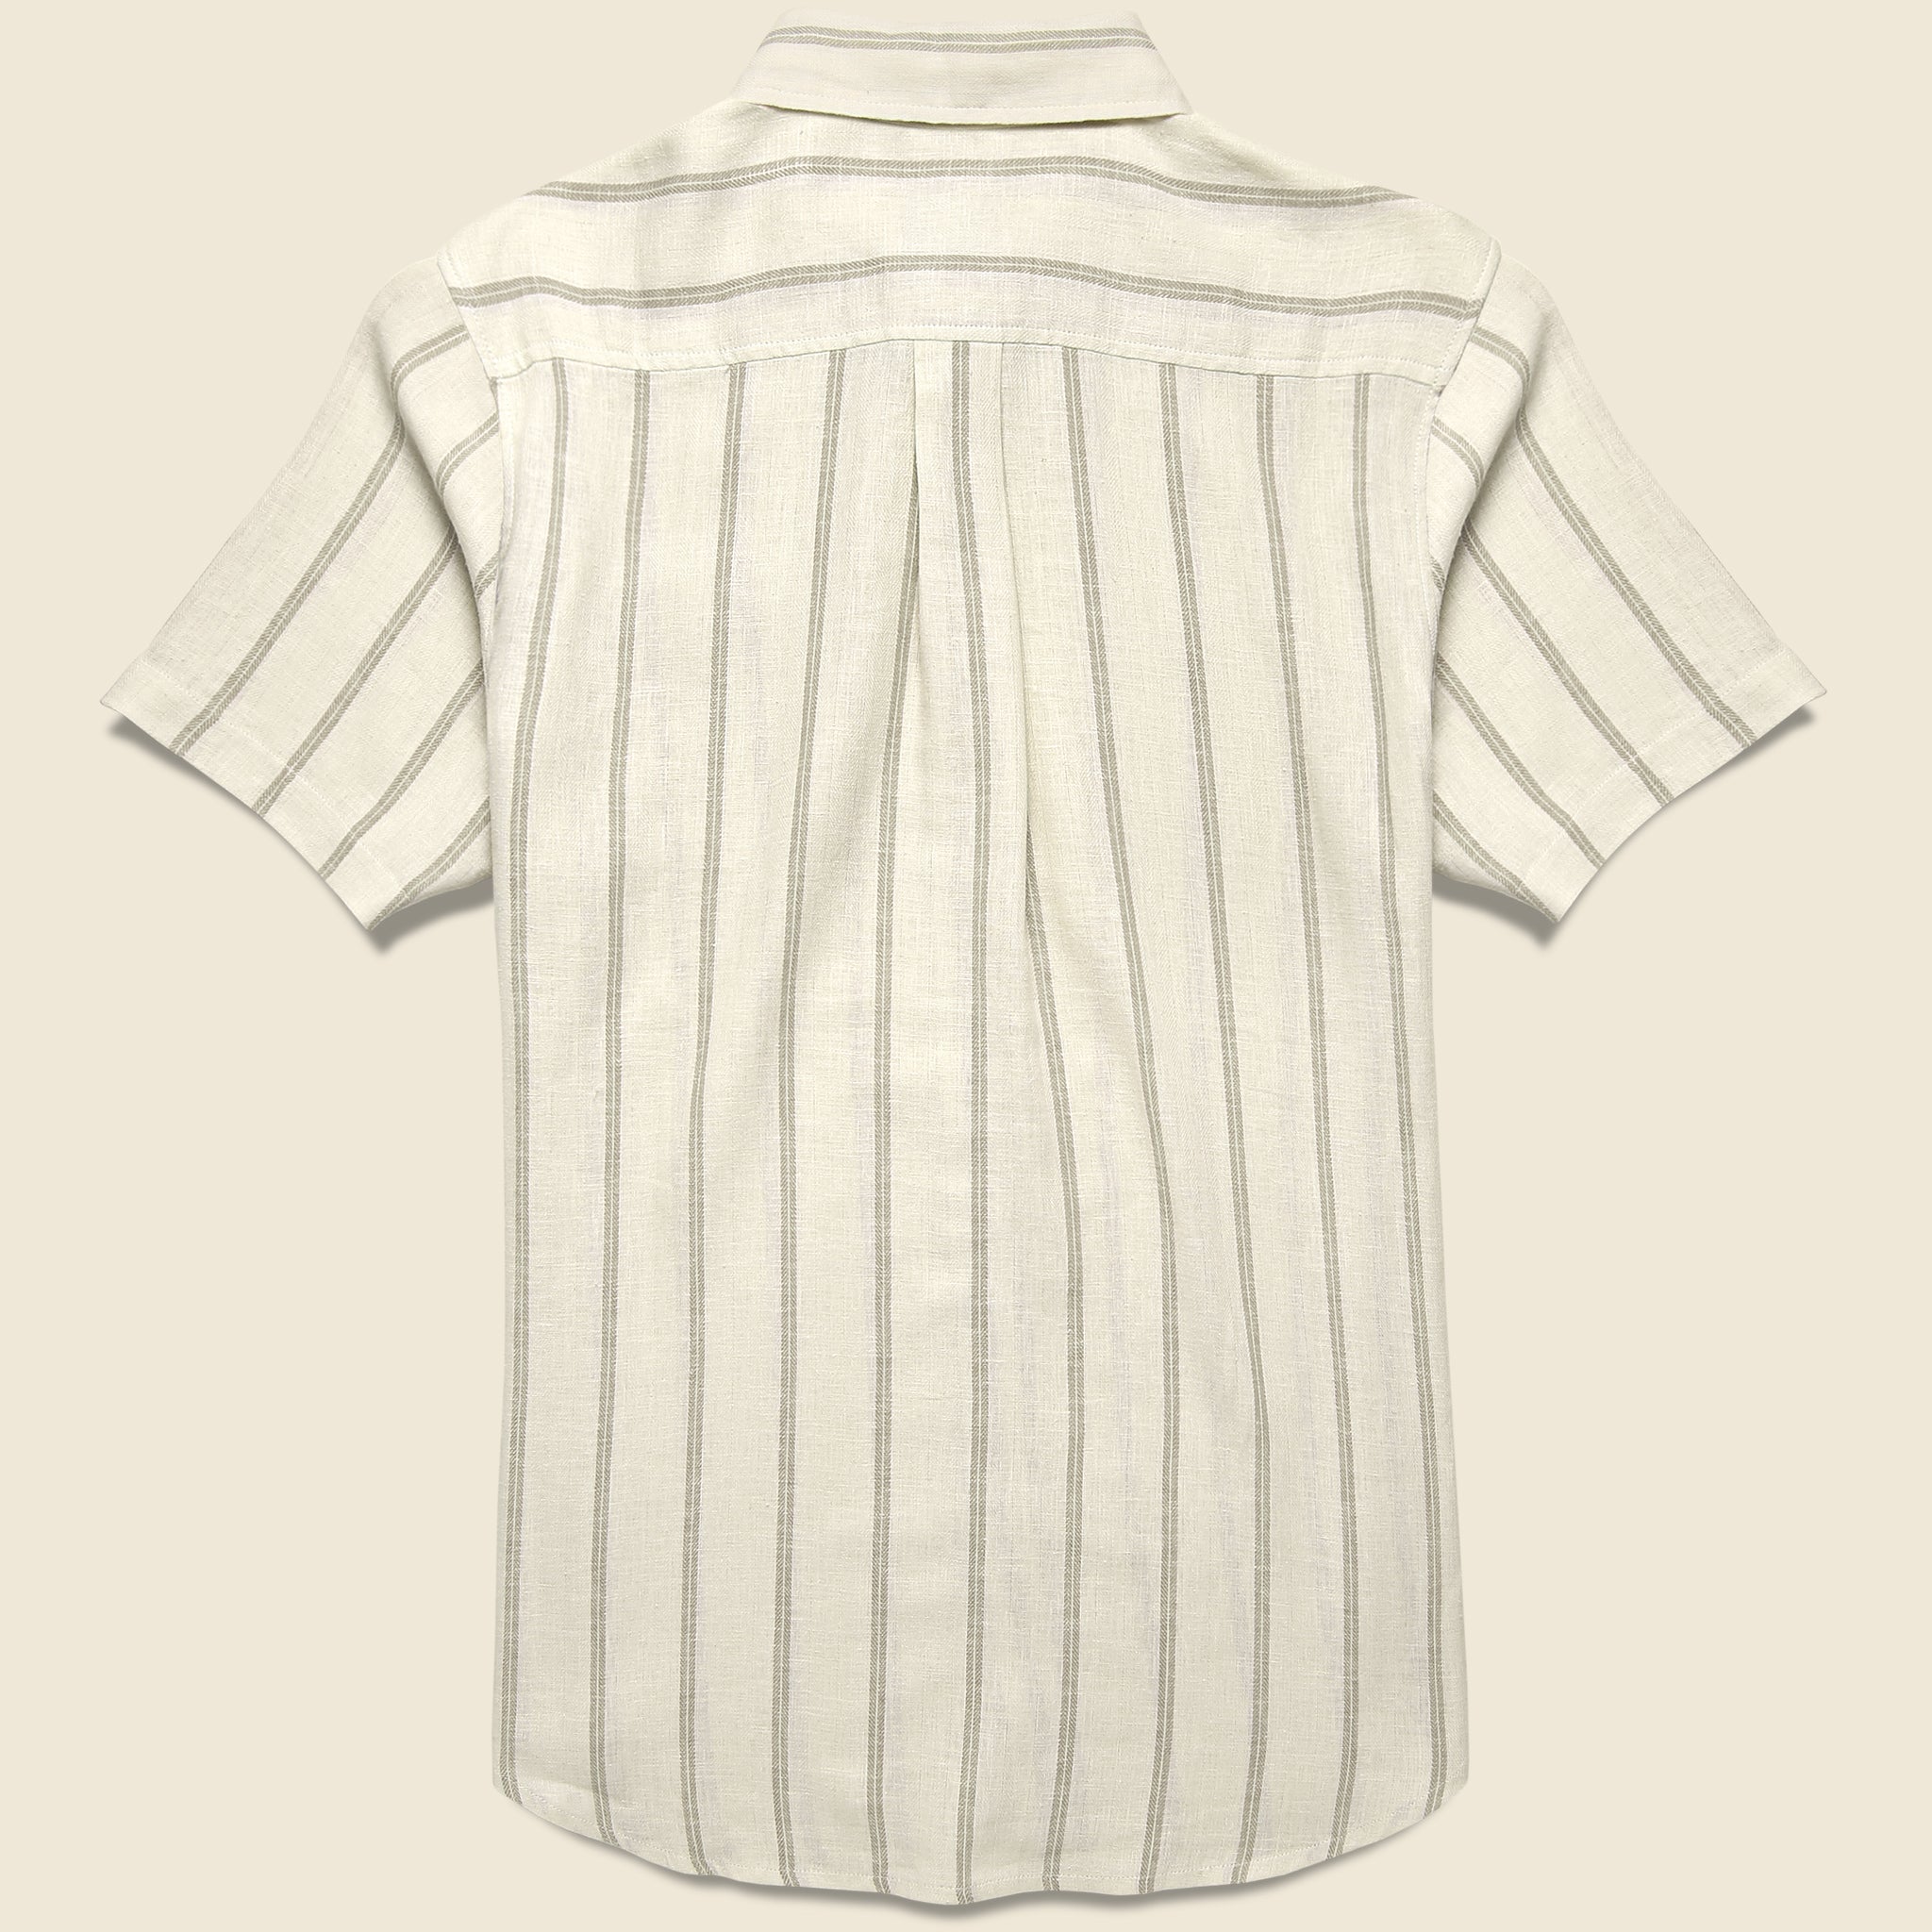 Katin, Alan Shirt - Vintage White